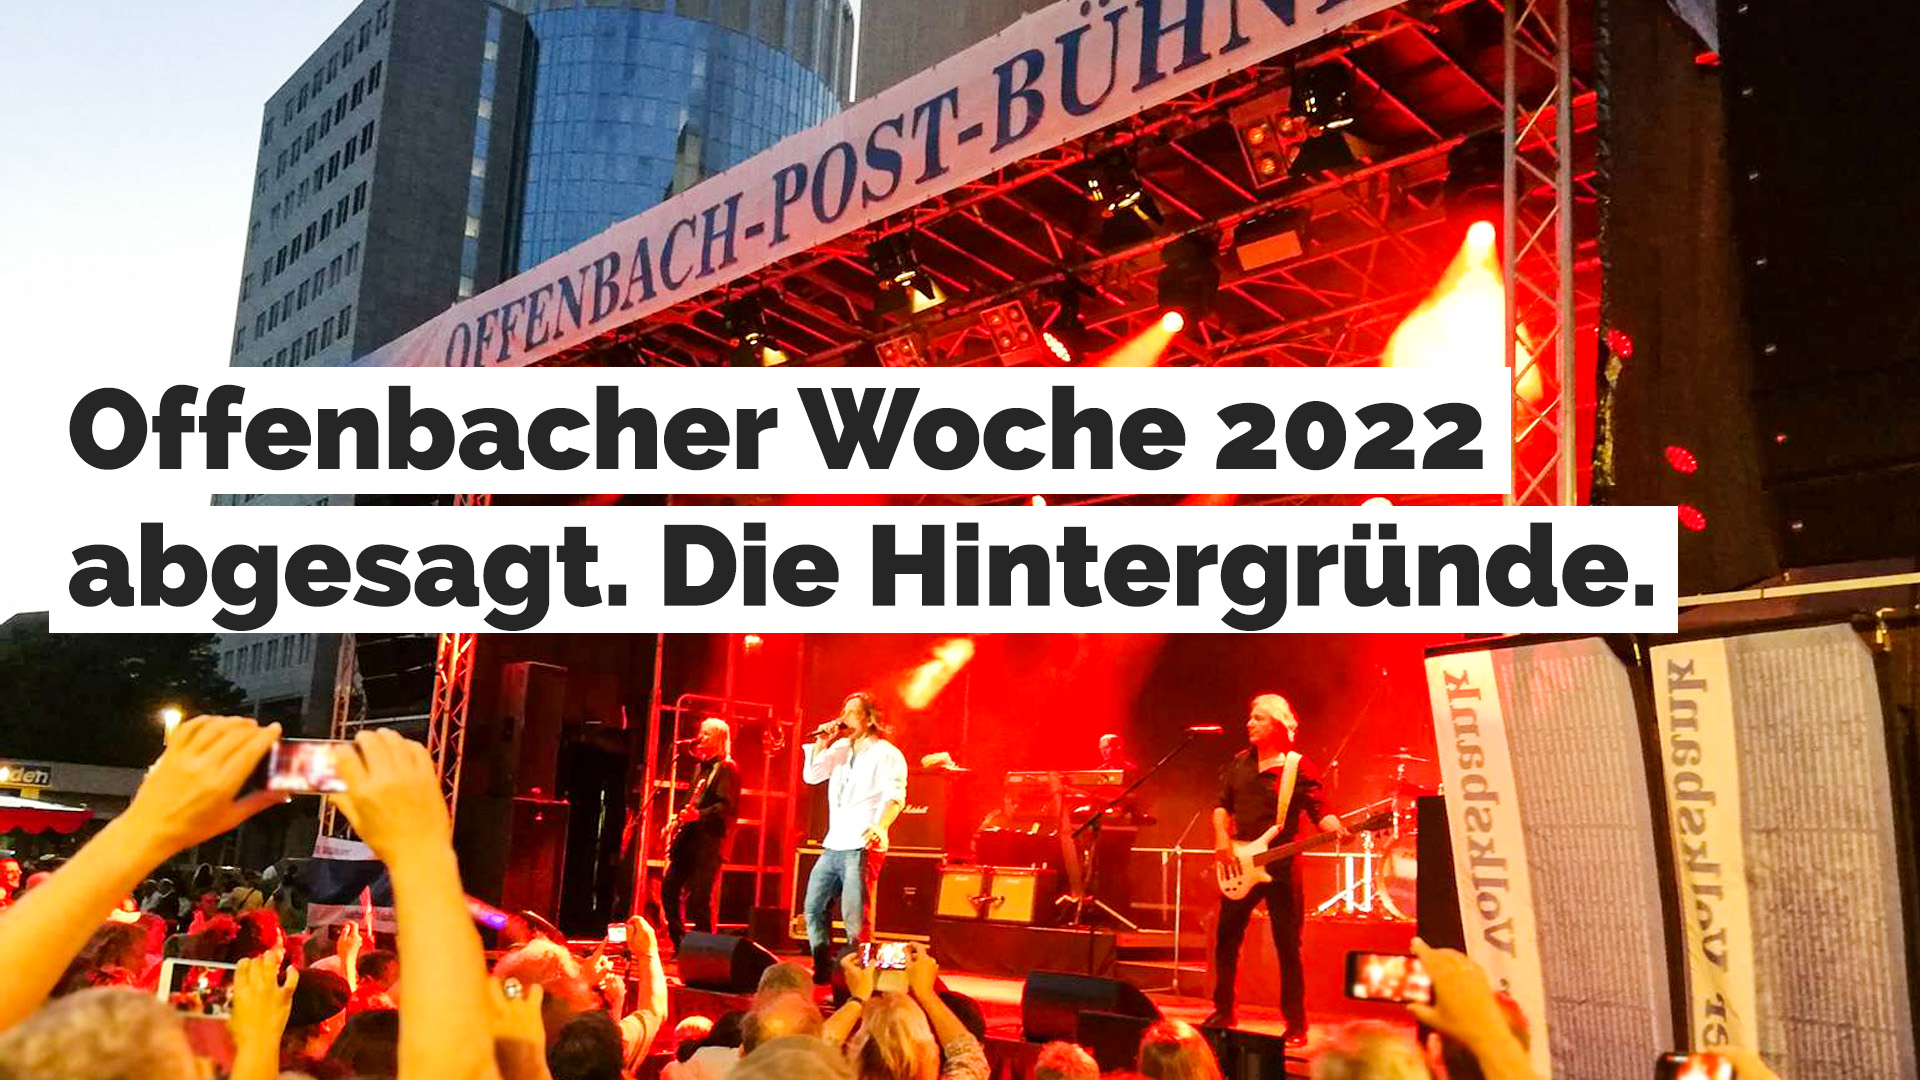 Offenbacher Woche 2022 abgesagt - Hintergründe